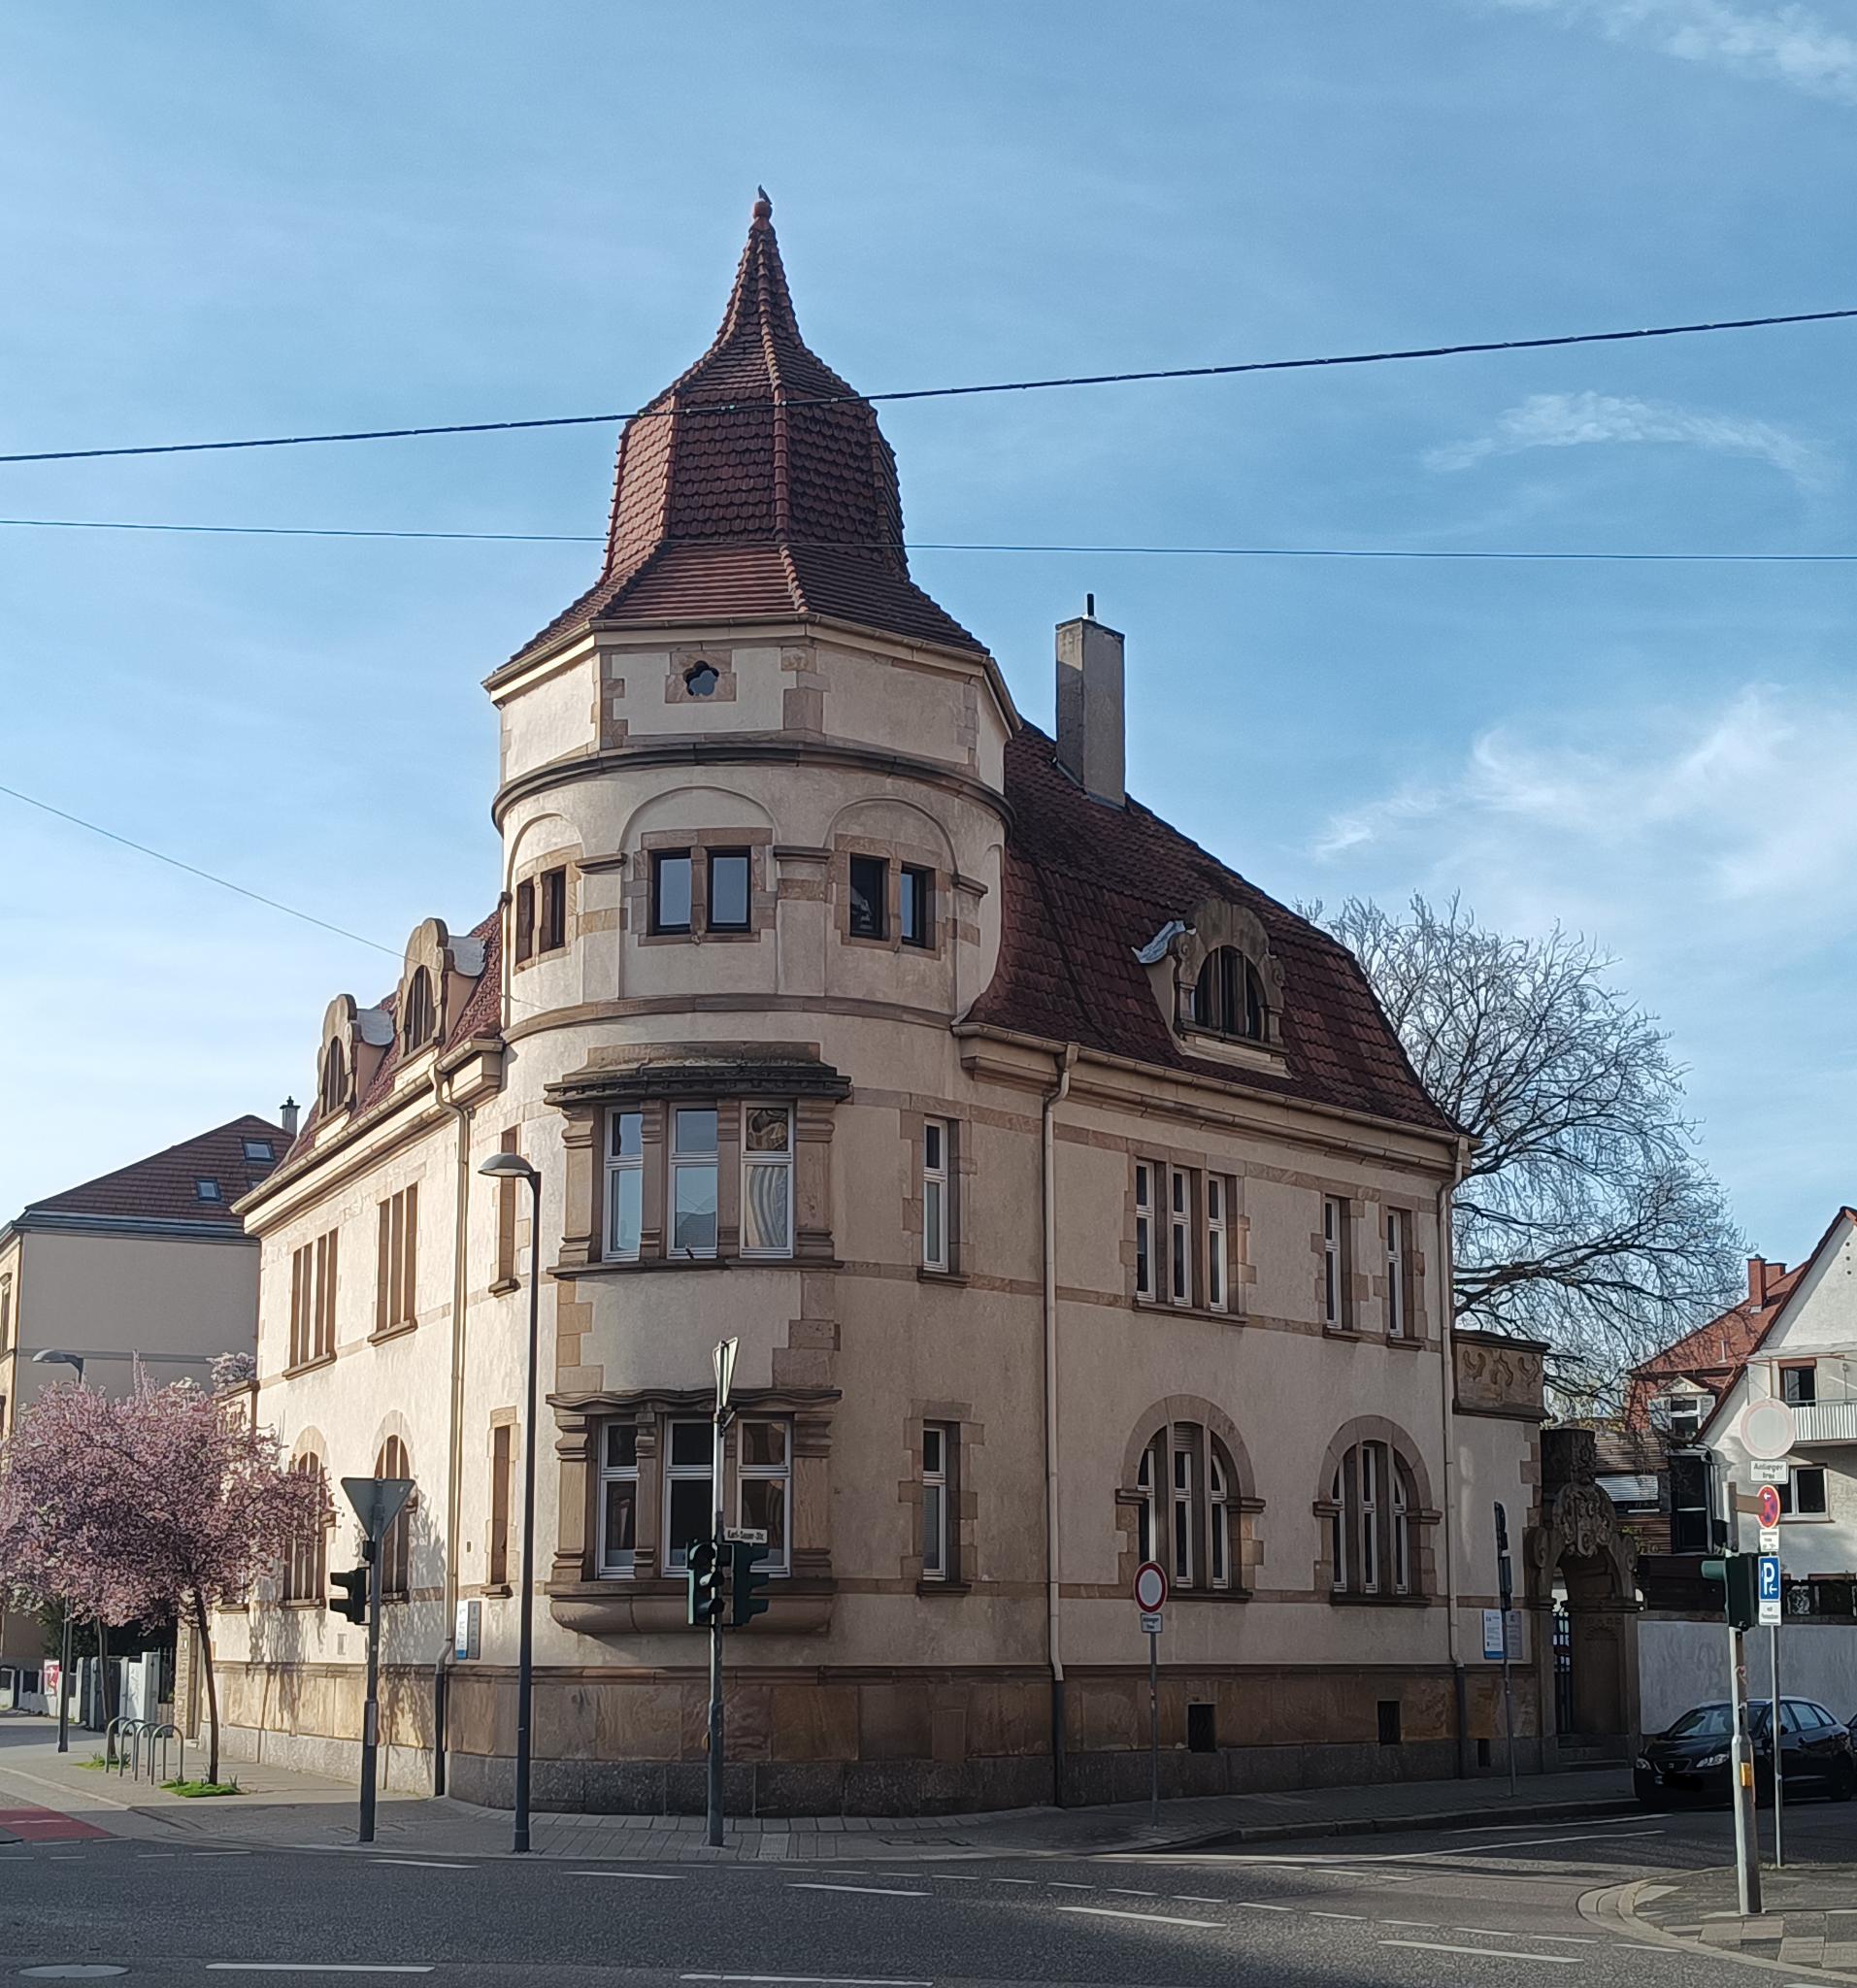 Datei:Südring Landau Haus 19 .jpeg